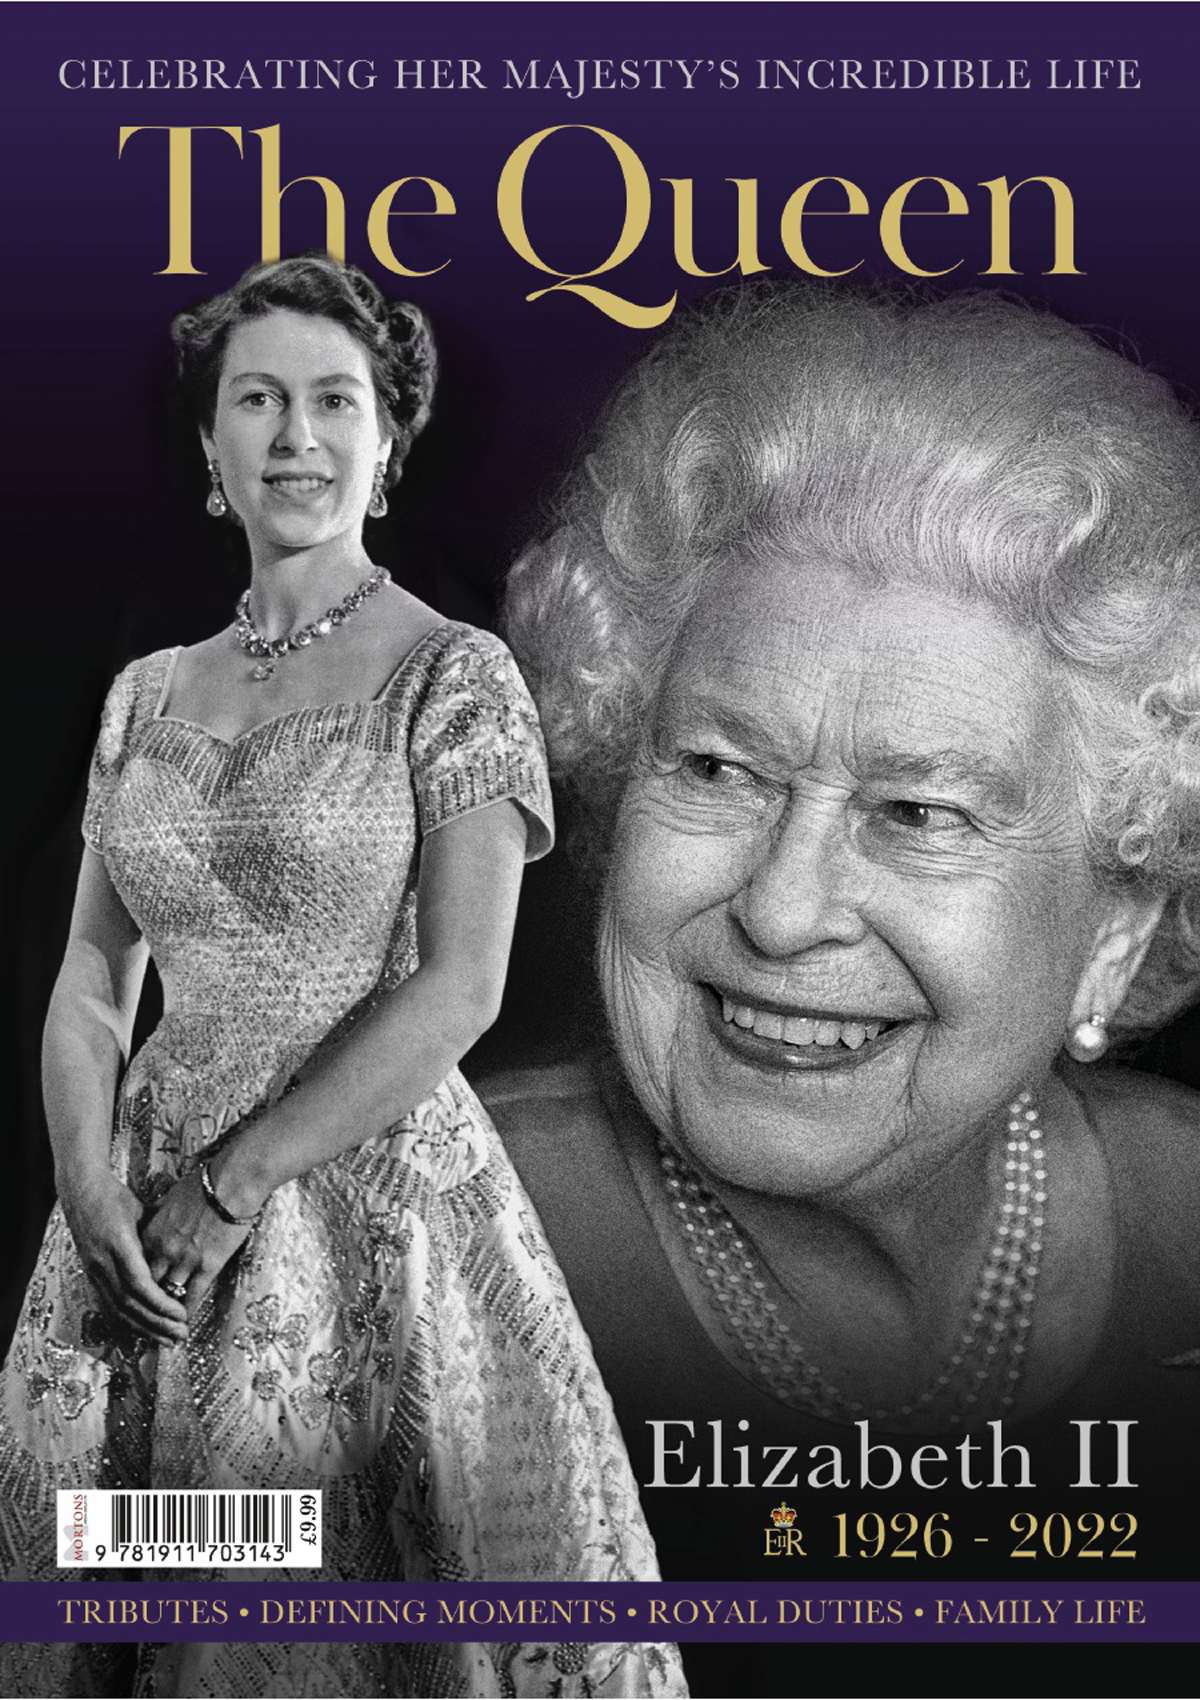 The Queen 1926-2022